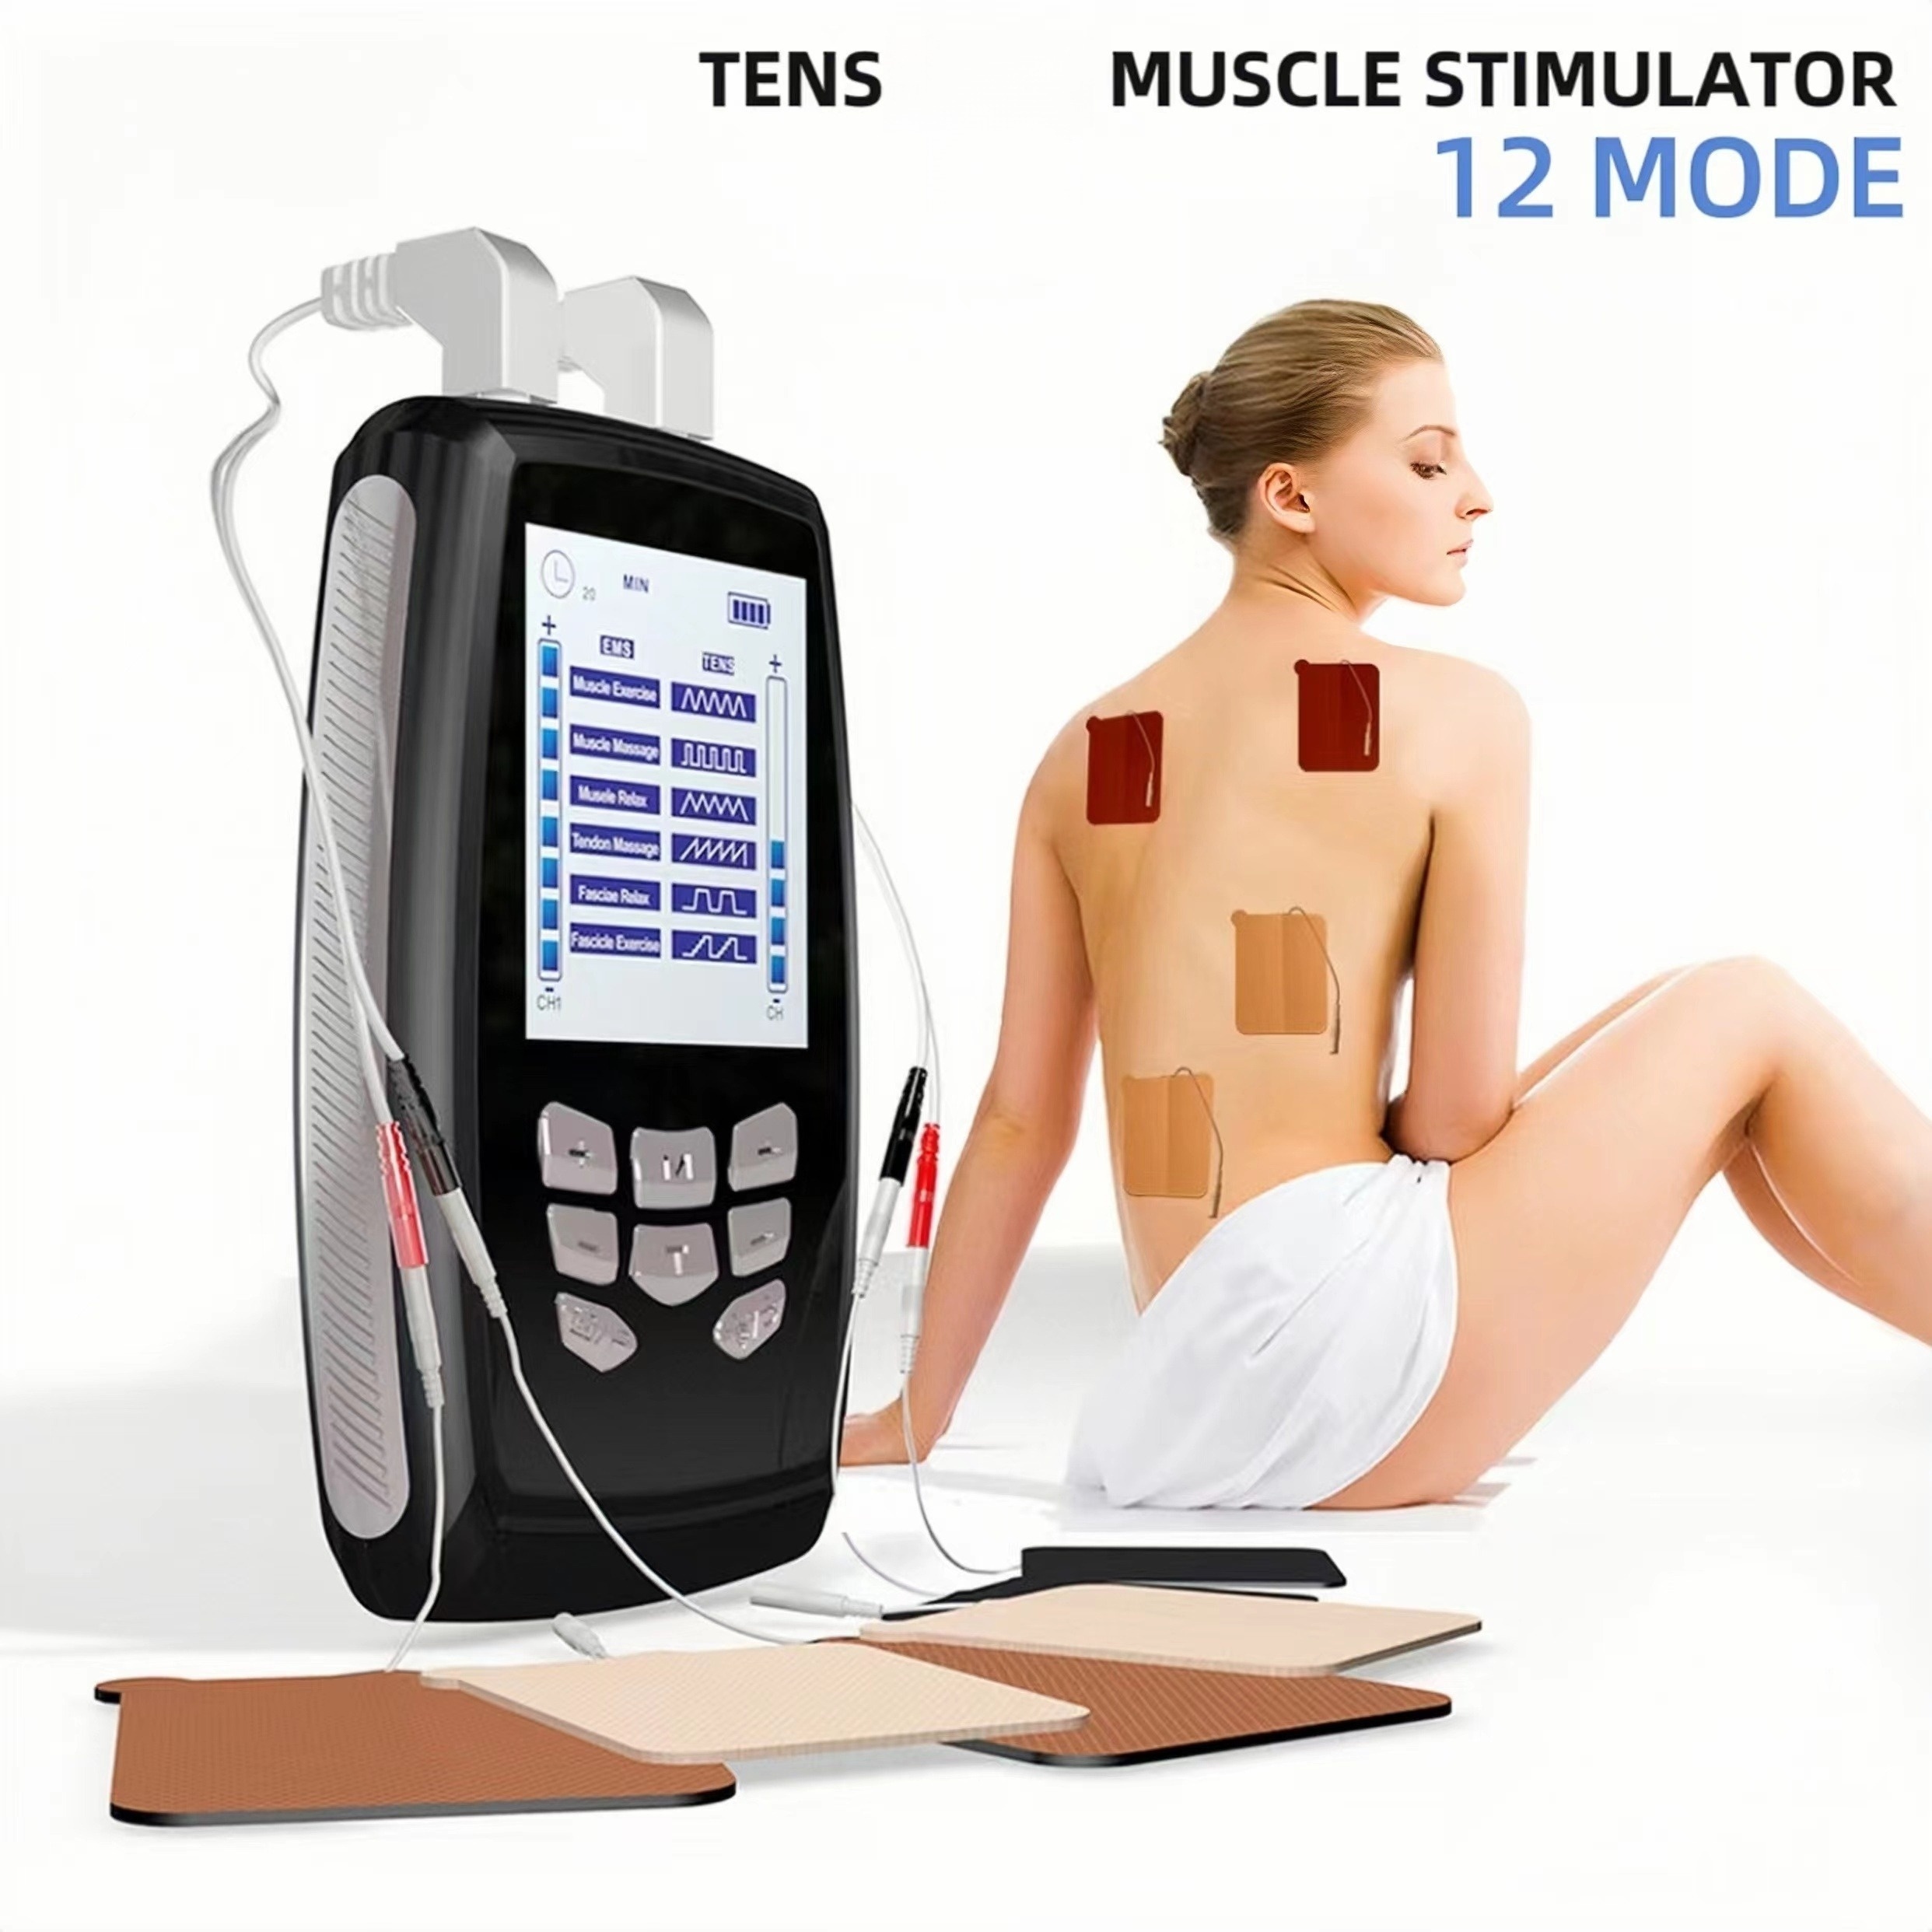 Maquina TENS Electroestimulador Muscular, Electrodos Fisioterapia